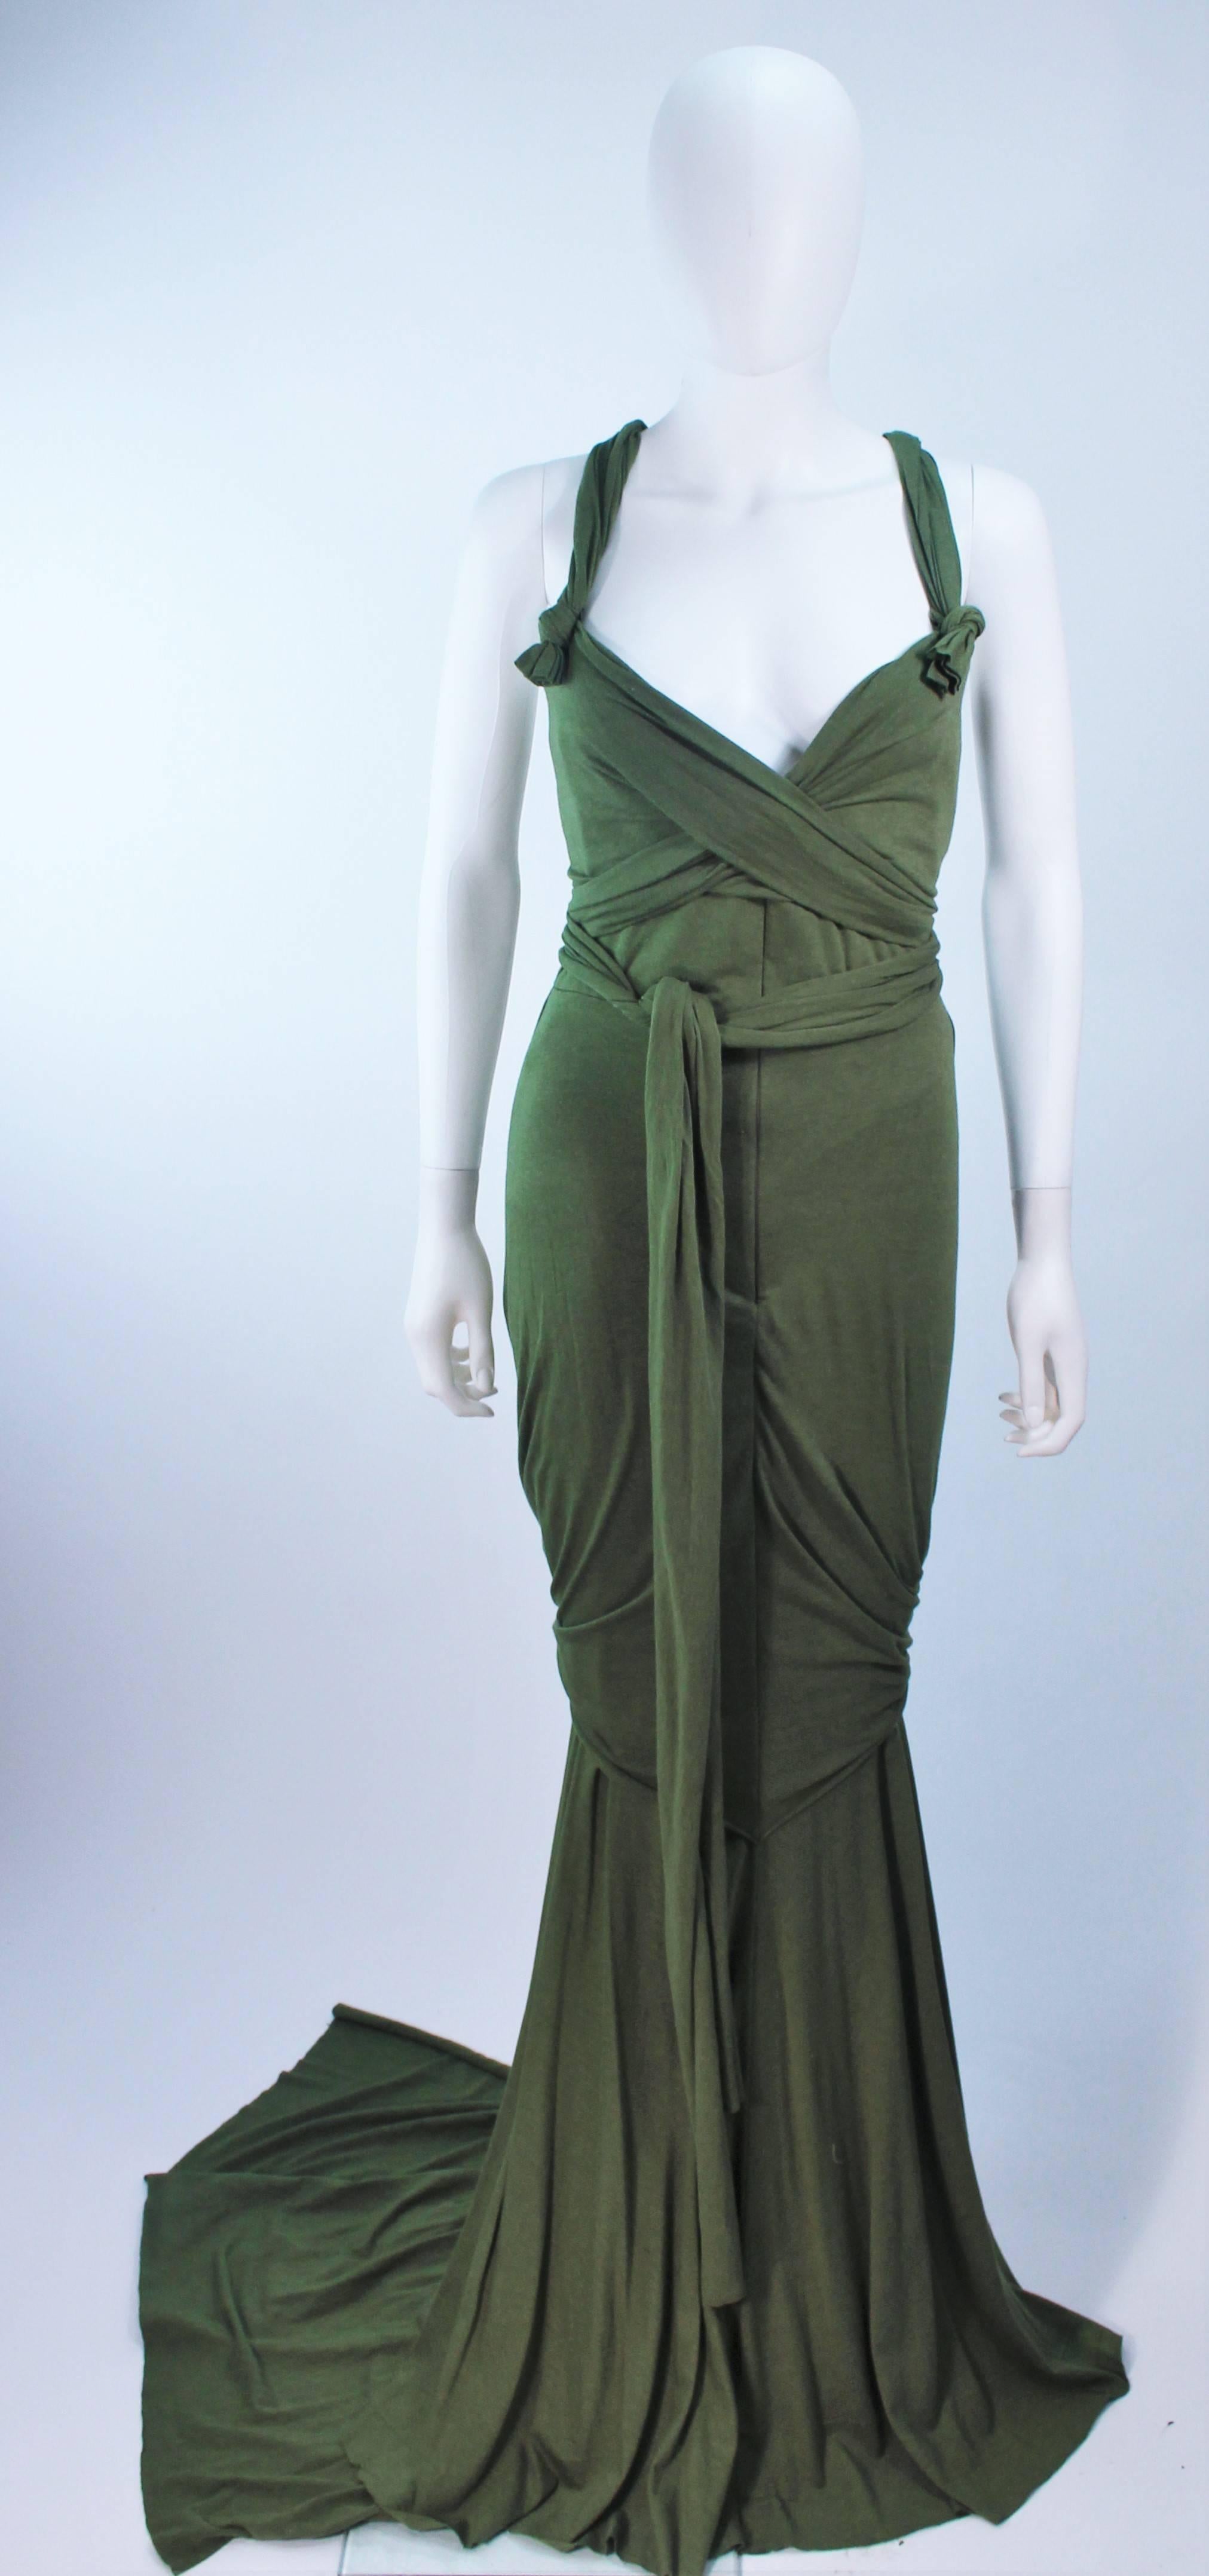 Cette robe Elizabeth Mason Couture est composée de jersey de bambou. Ce modèle présente un style enveloppant avec une encolure tombante. Il peut être confectionné dans une variété de couleurs.

La robe peut être confectionnée dans une variété de